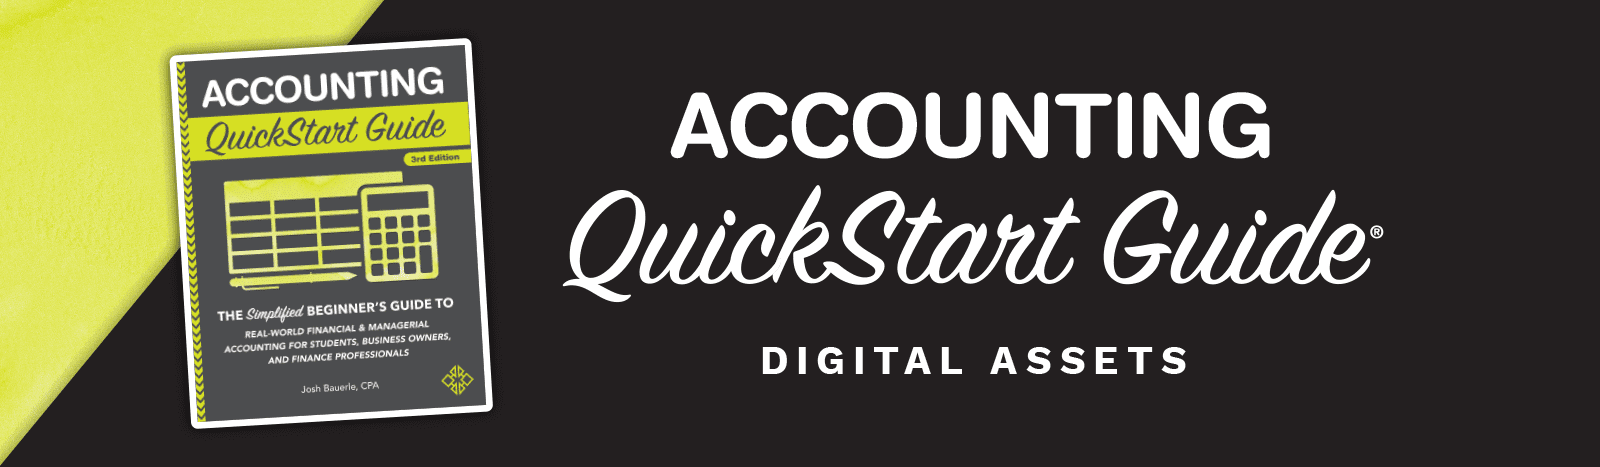 Accounting QuickStart Guide Digital Asset Header